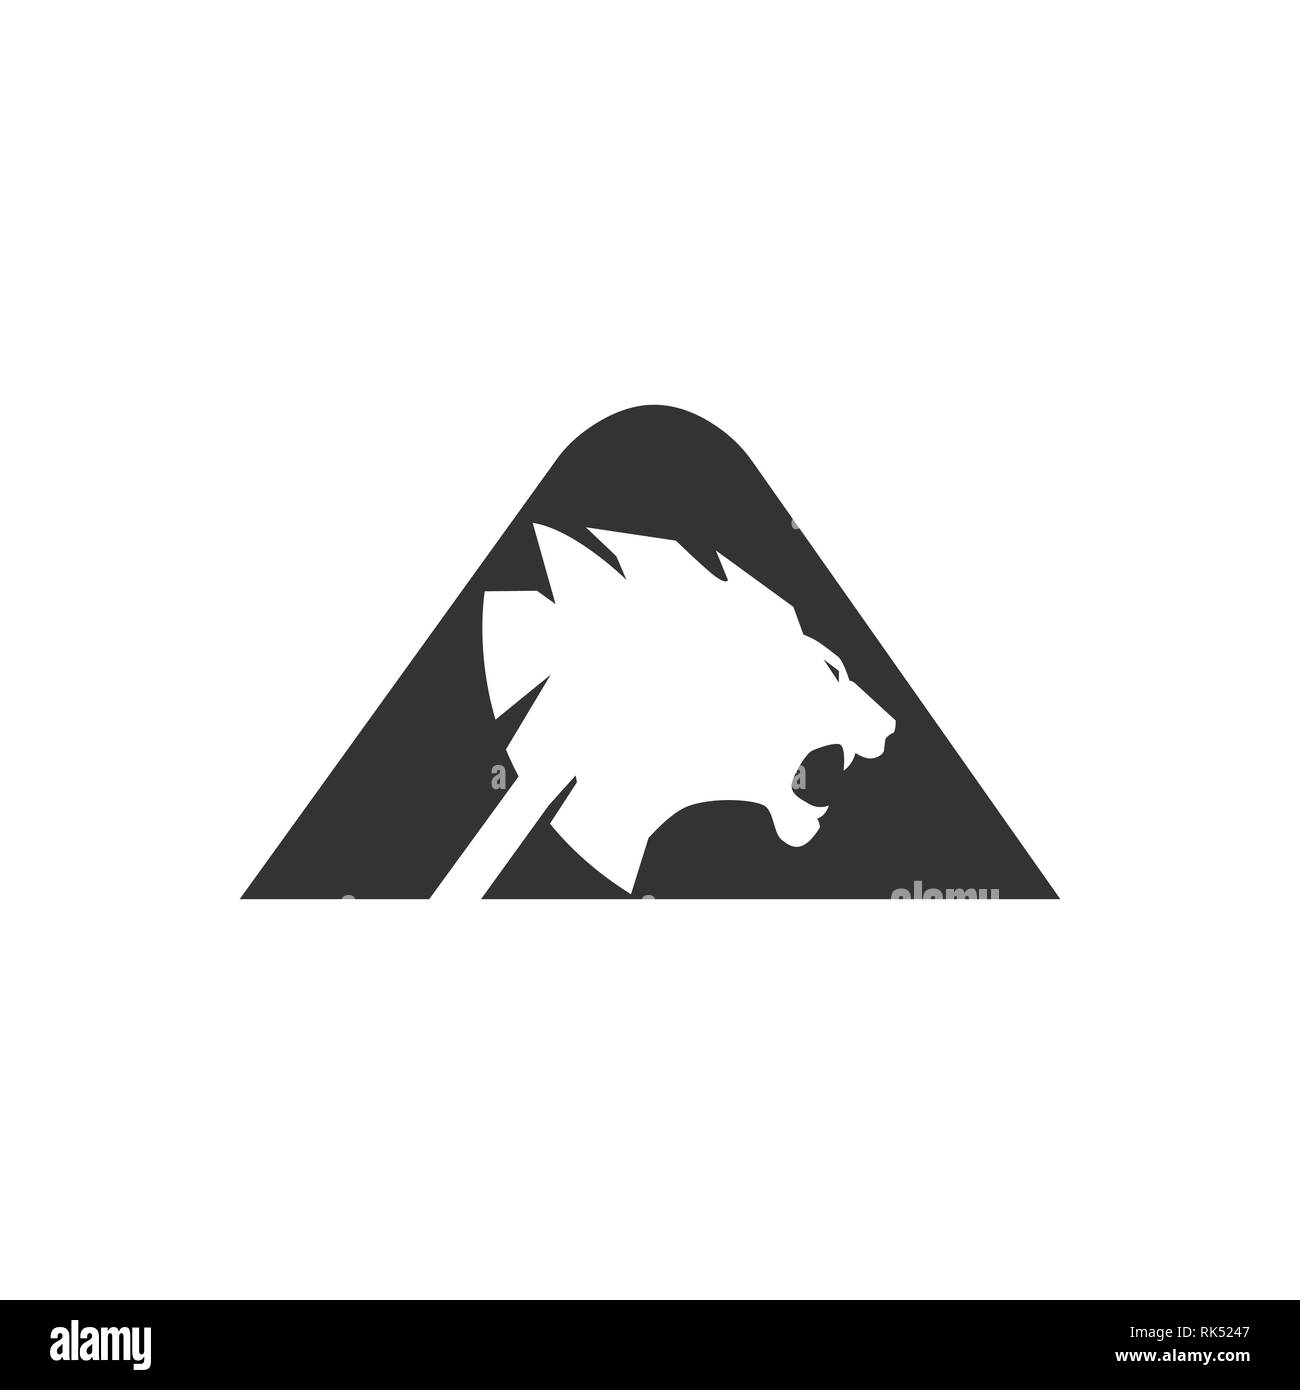 Lion's Head vector Silhouette in den Kreis Shape Design Illustration. Lion vektor Konzept Abbildung. Lion's Head Logo Stock Vektor